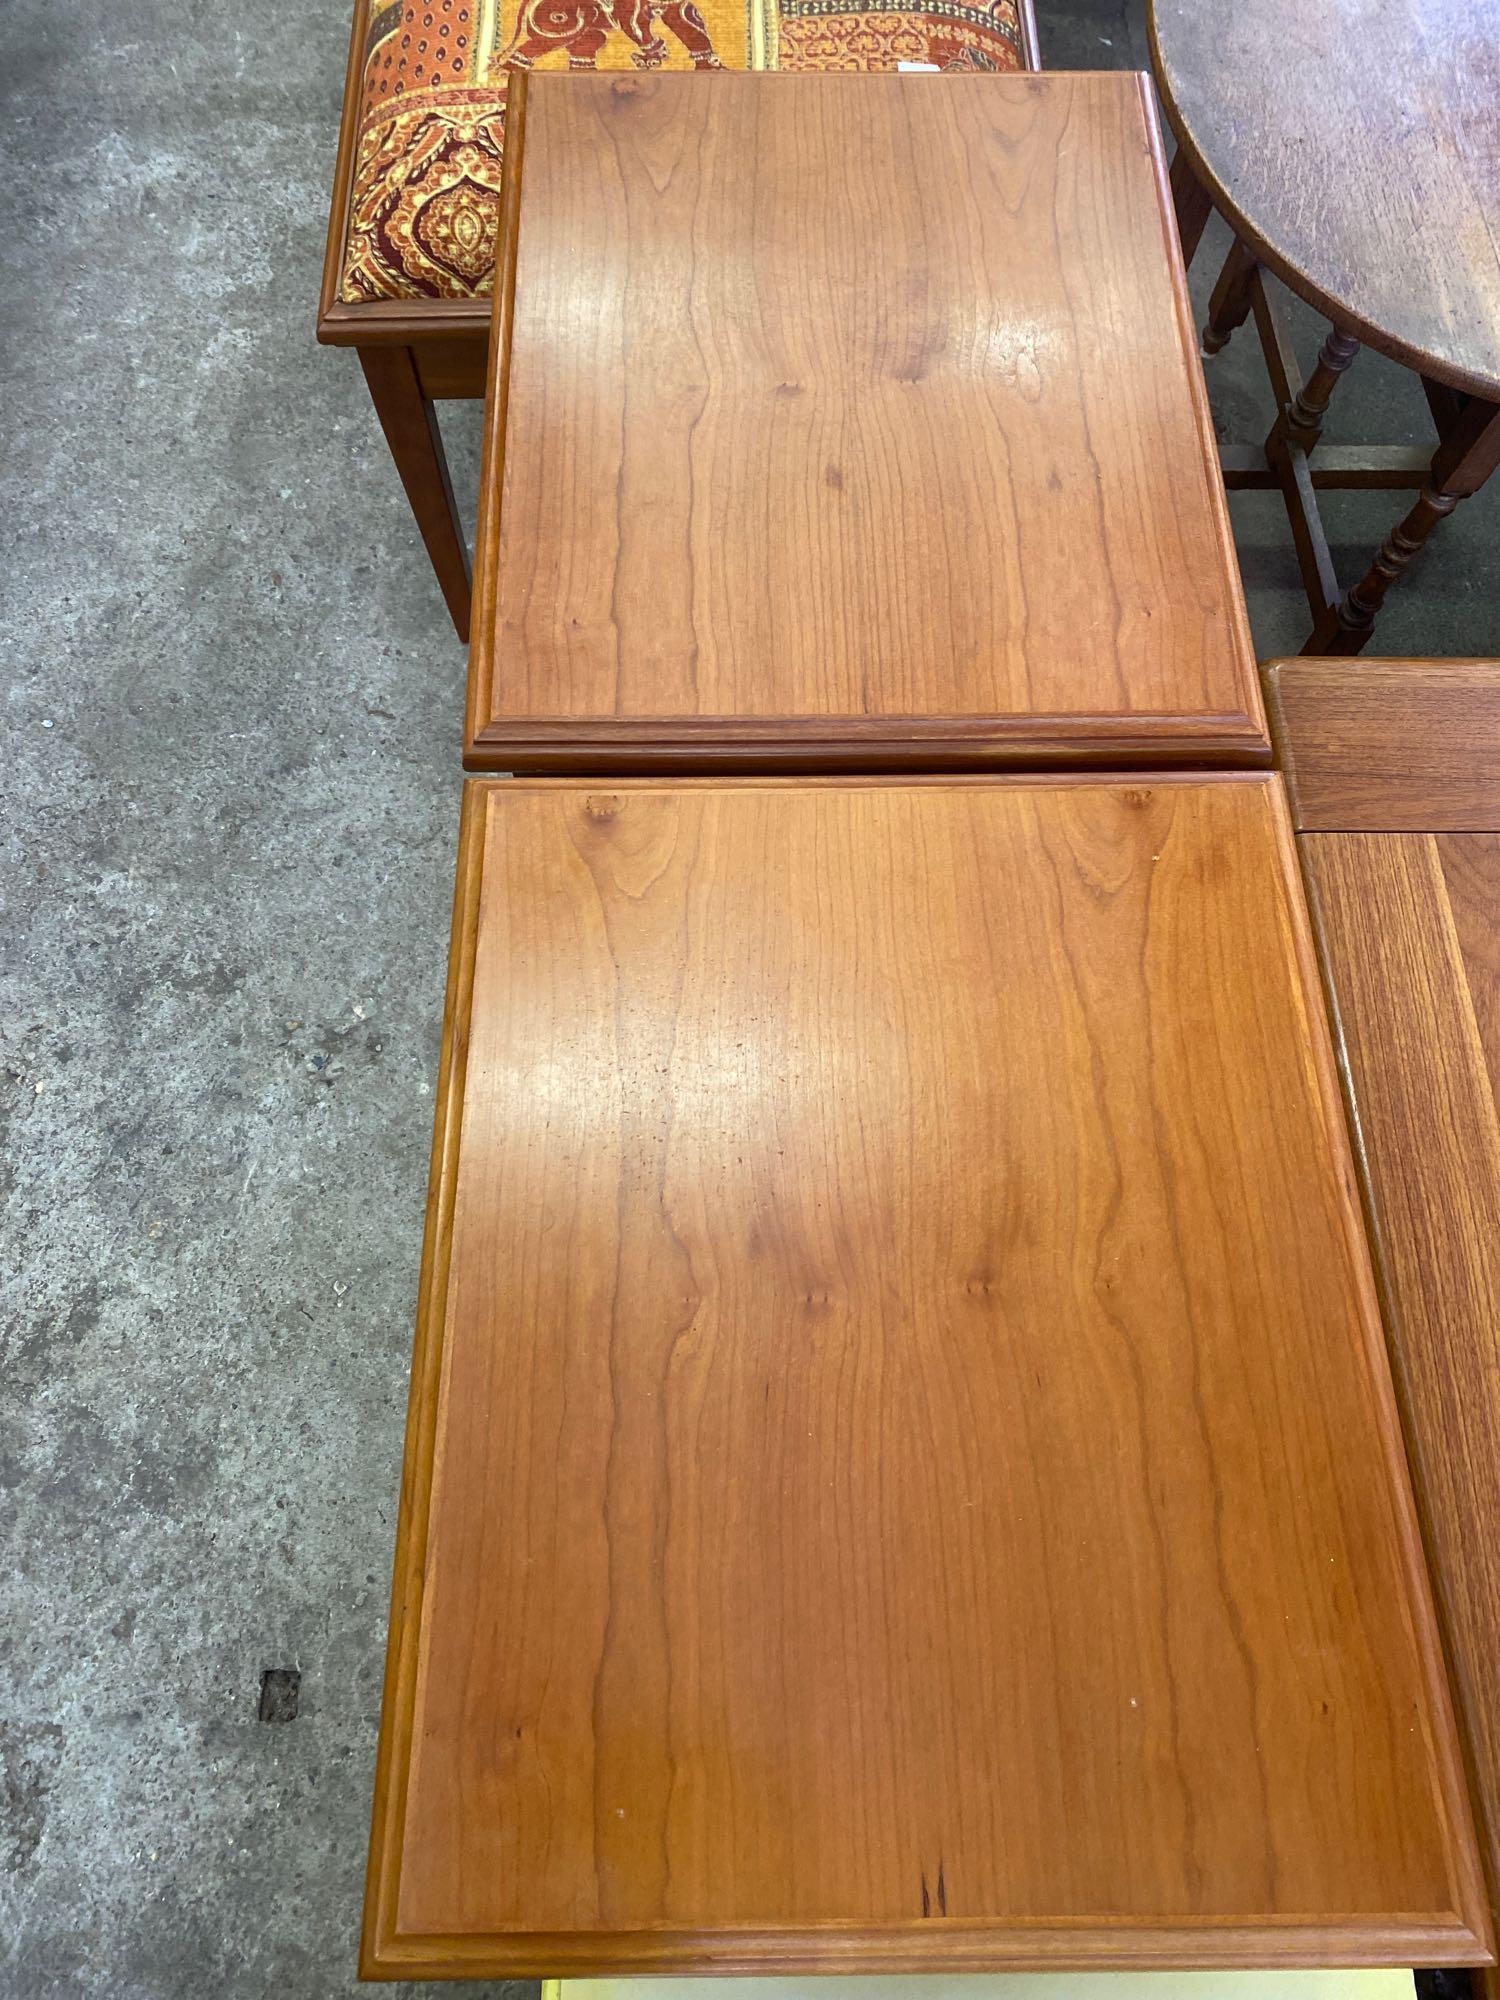 Pair of wood veneer side tables and upholstered veneer stool - Image 4 of 9